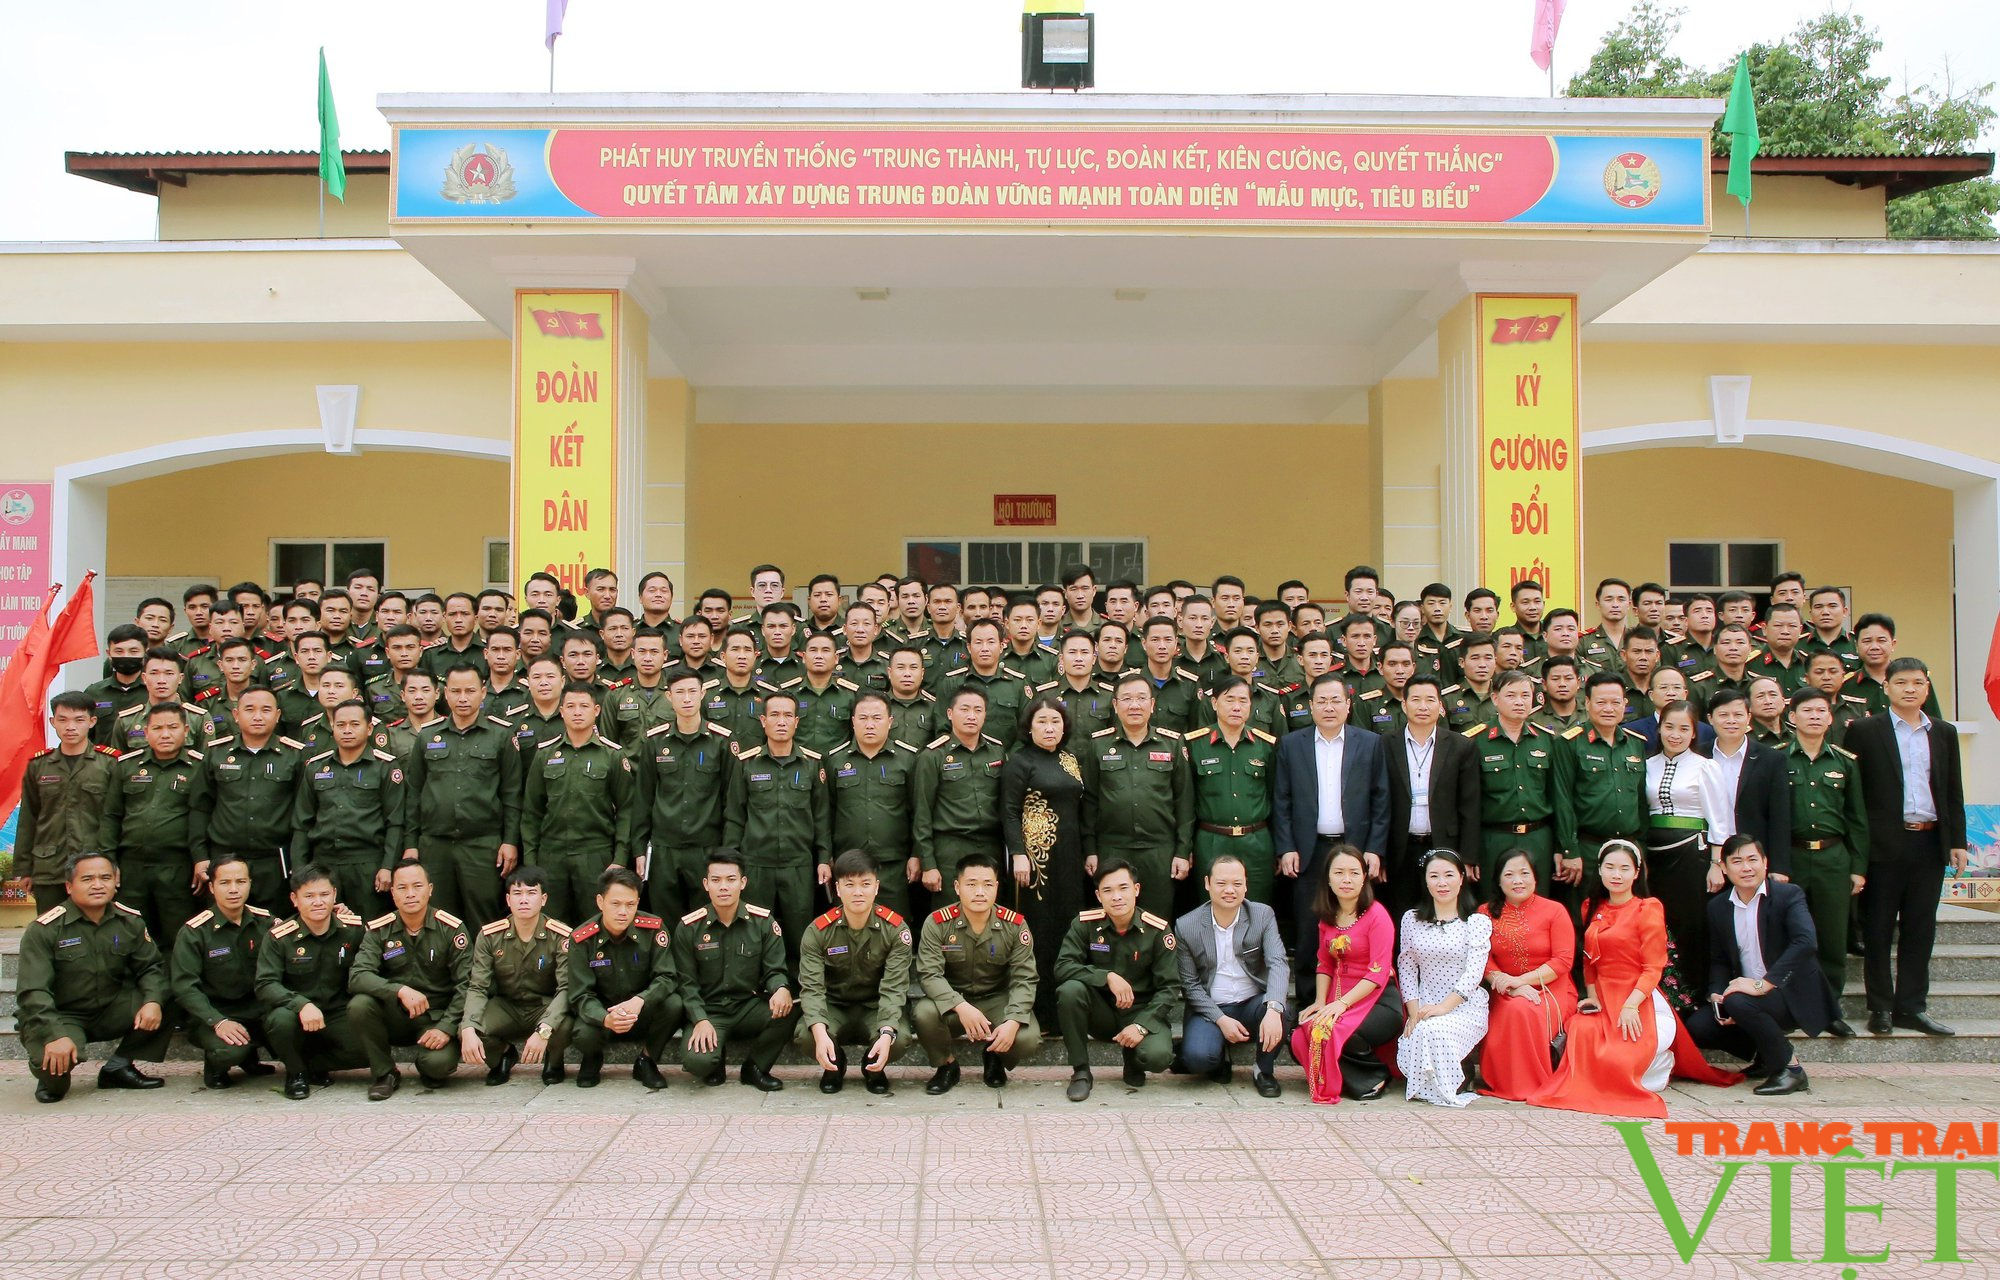 Bồi dưỡng Tiếng Việt cho cán bộ quân đội nhân dân Lào  - Ảnh 4.